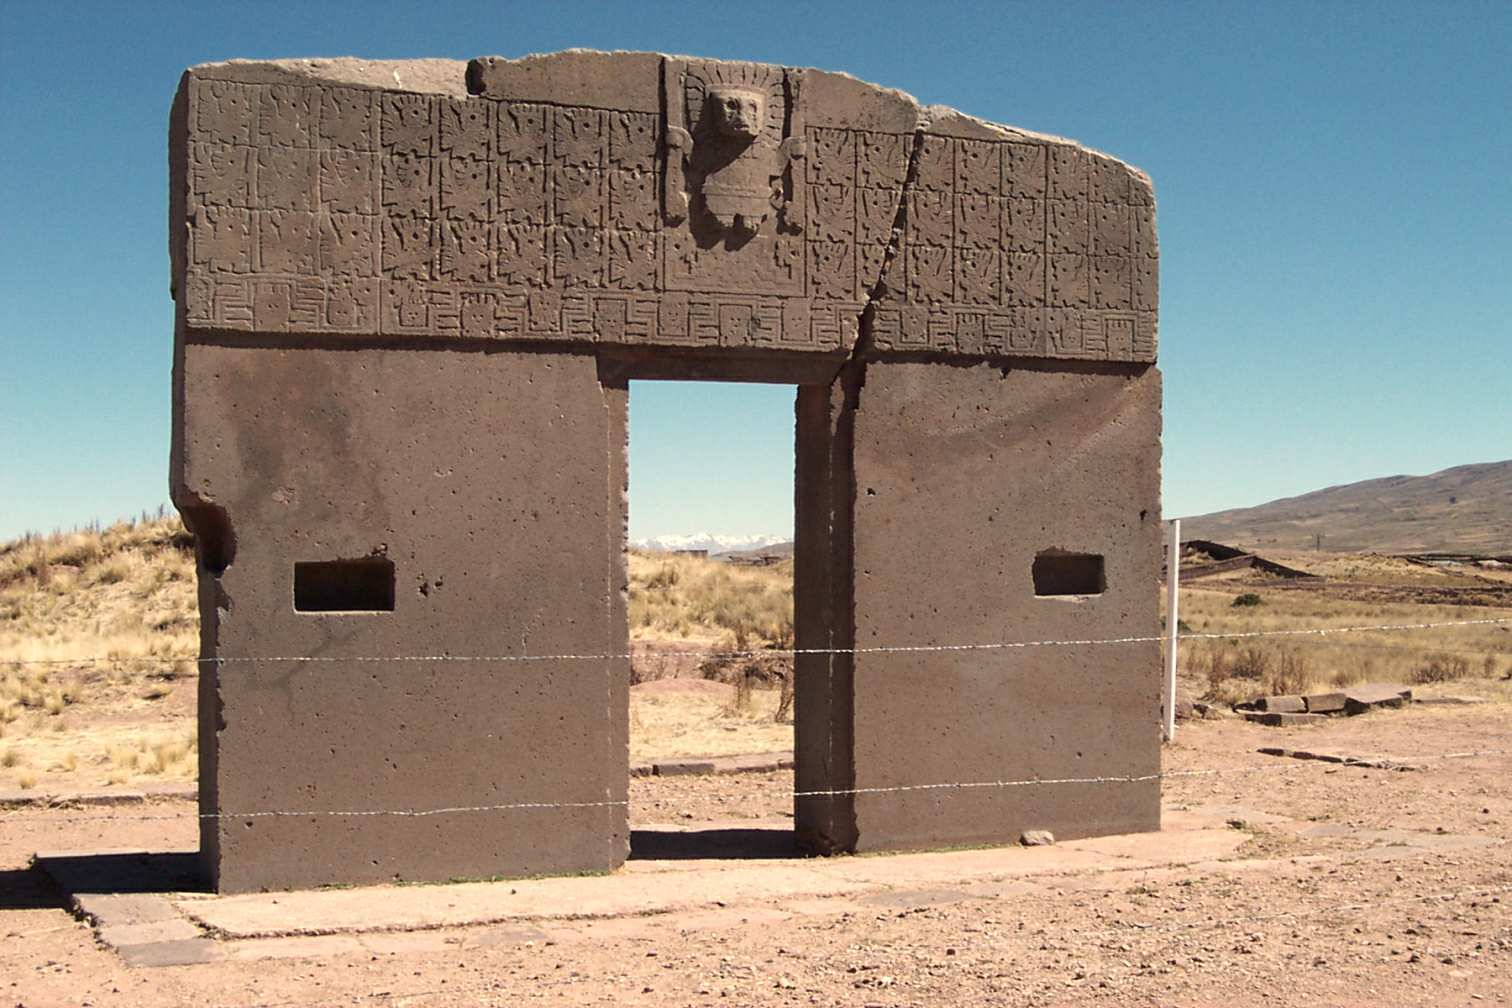 Geata na grèine bho shìobhaltas Tiwanaku ann am Bolivia